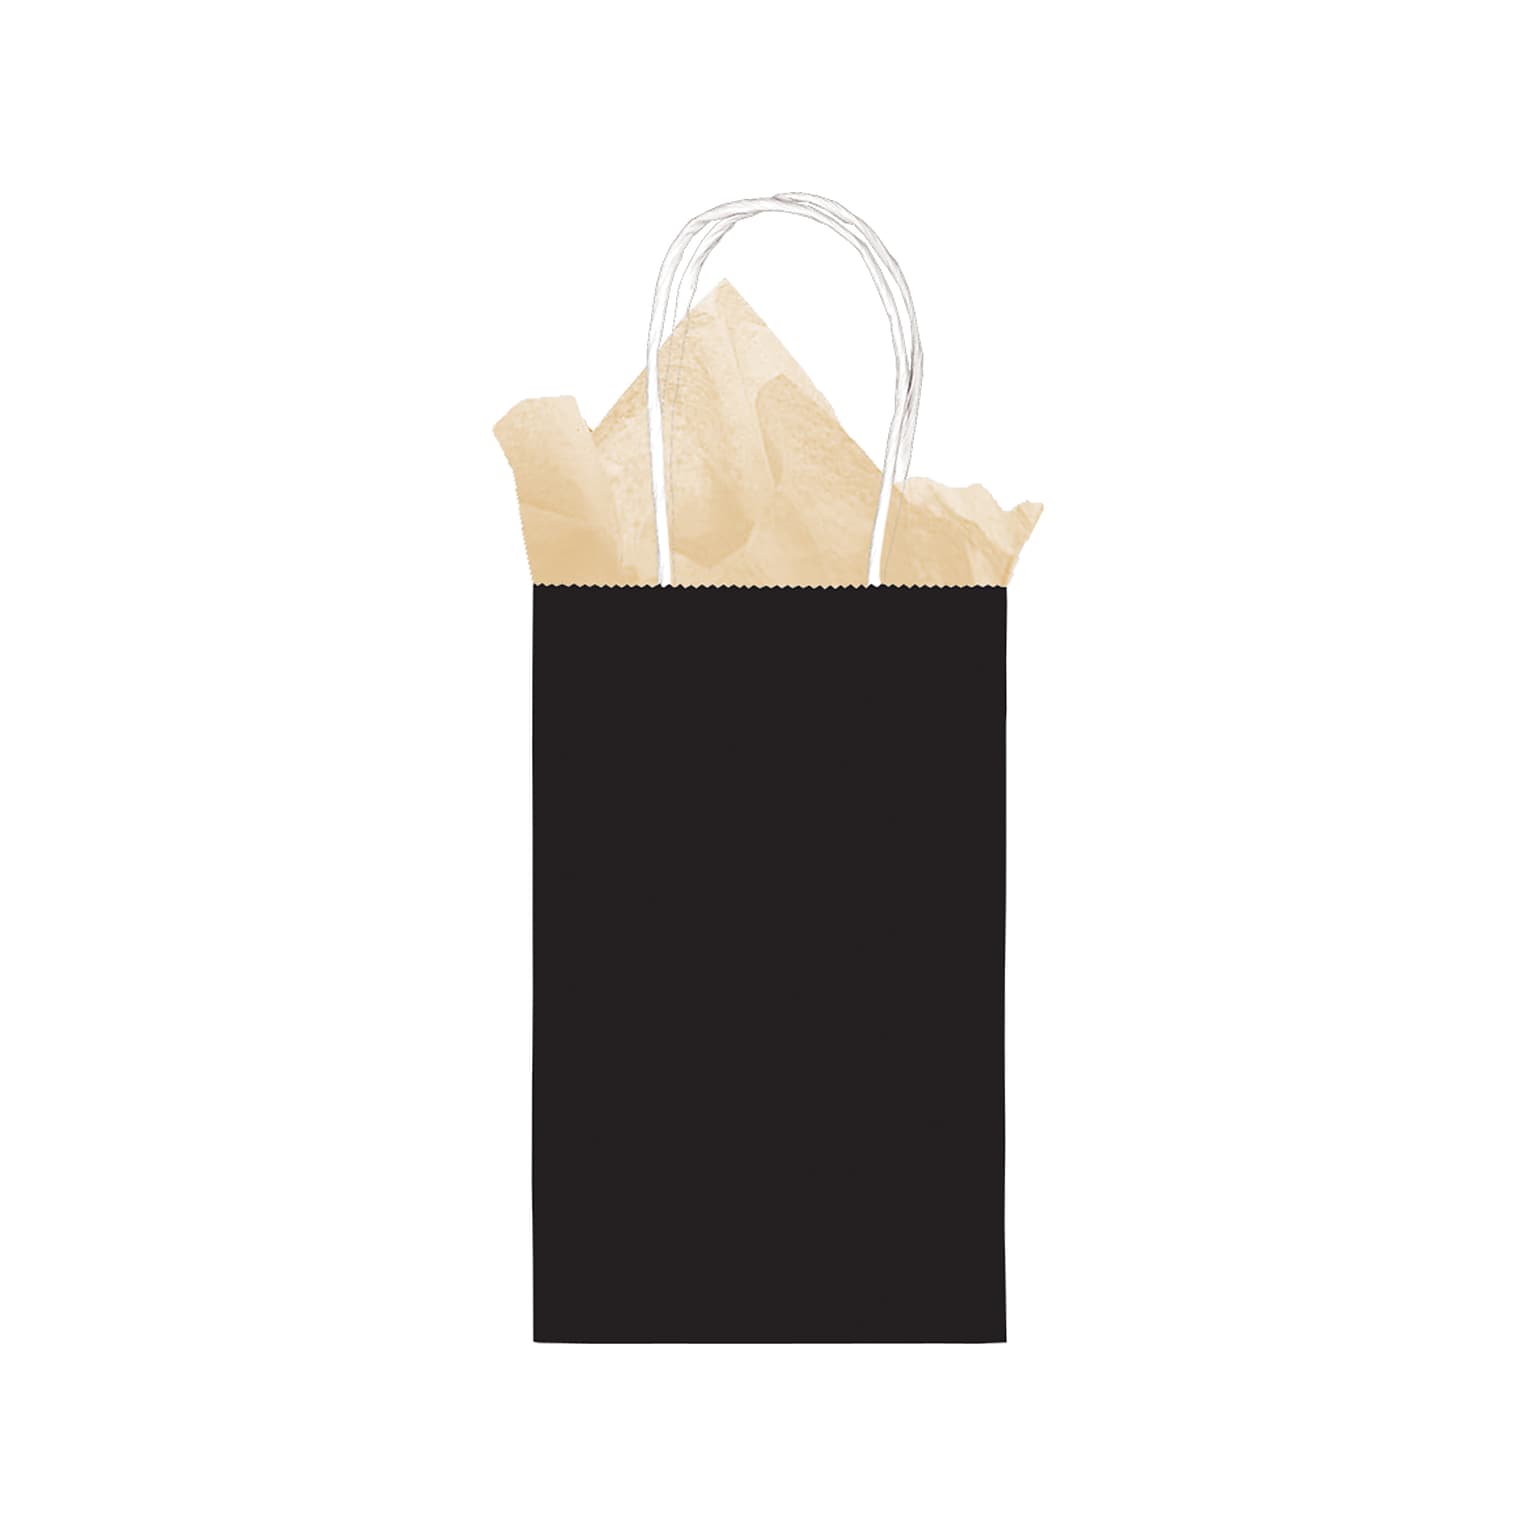 Amscan Kraft Paper Bag, 8.25 x 5.25, Jet Black, 24 Bags/Pack (162800.10)